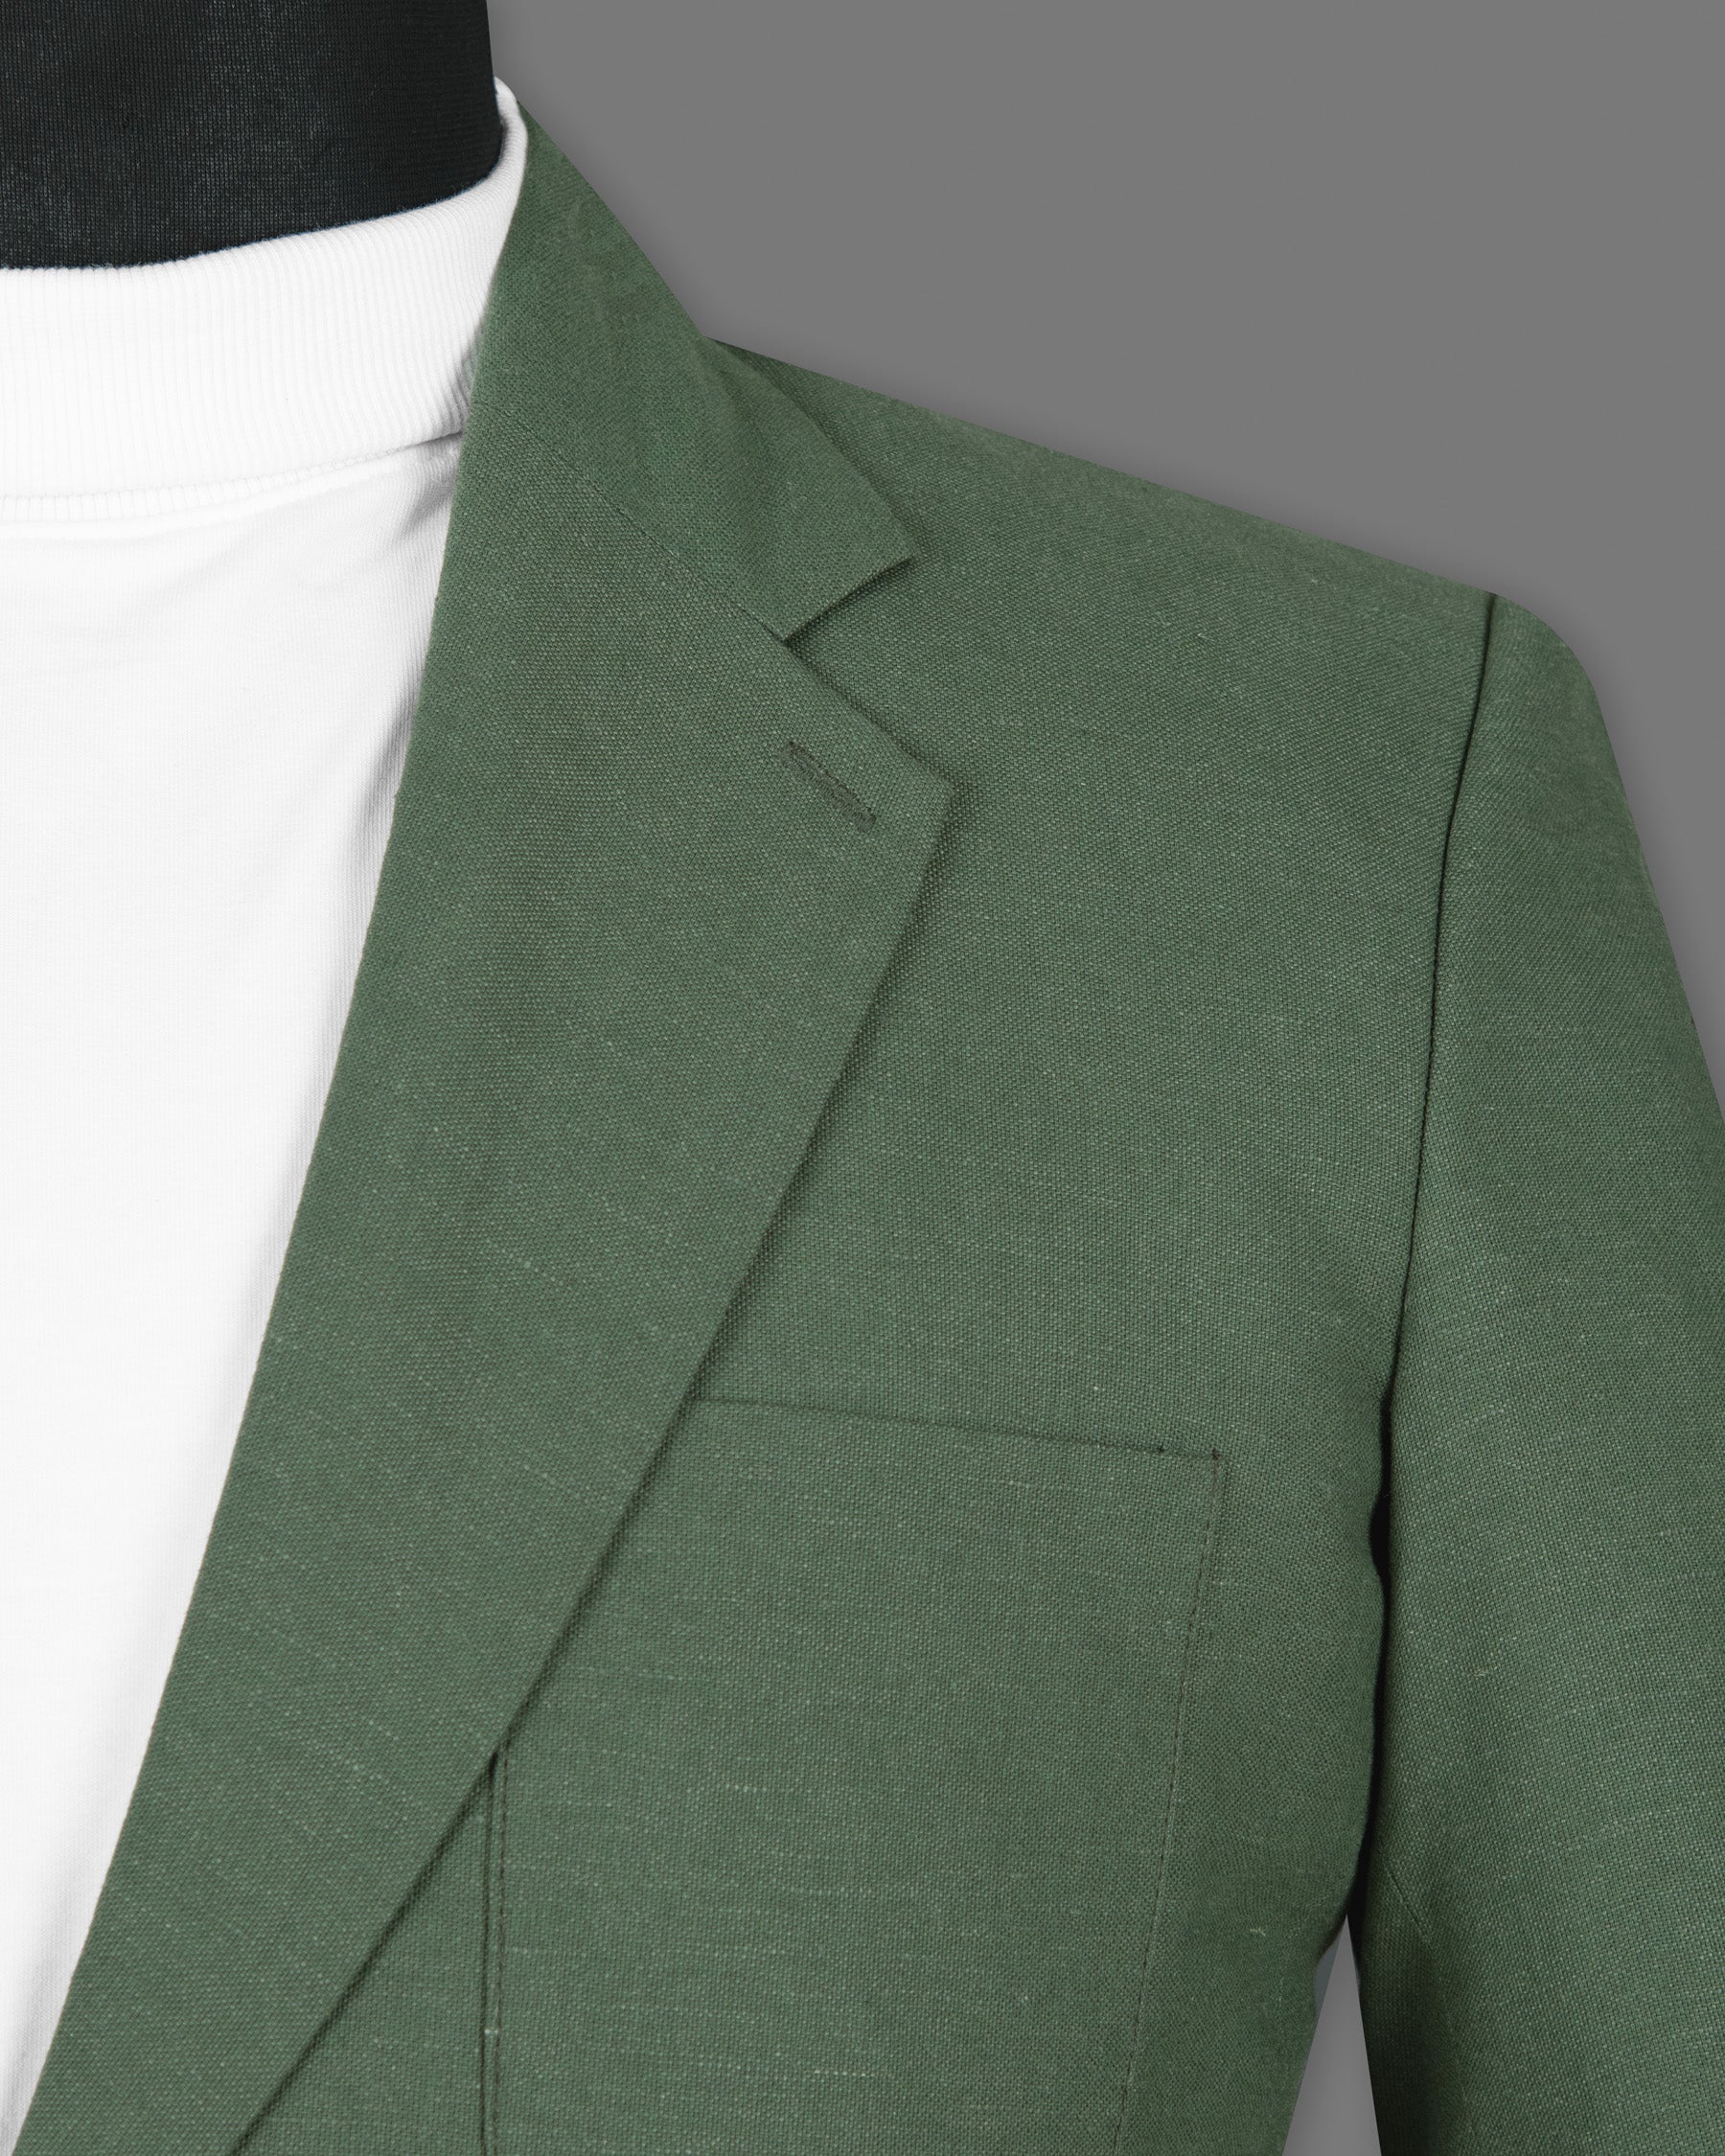 Asparagus Green Luxurious Linen Sports Blazer